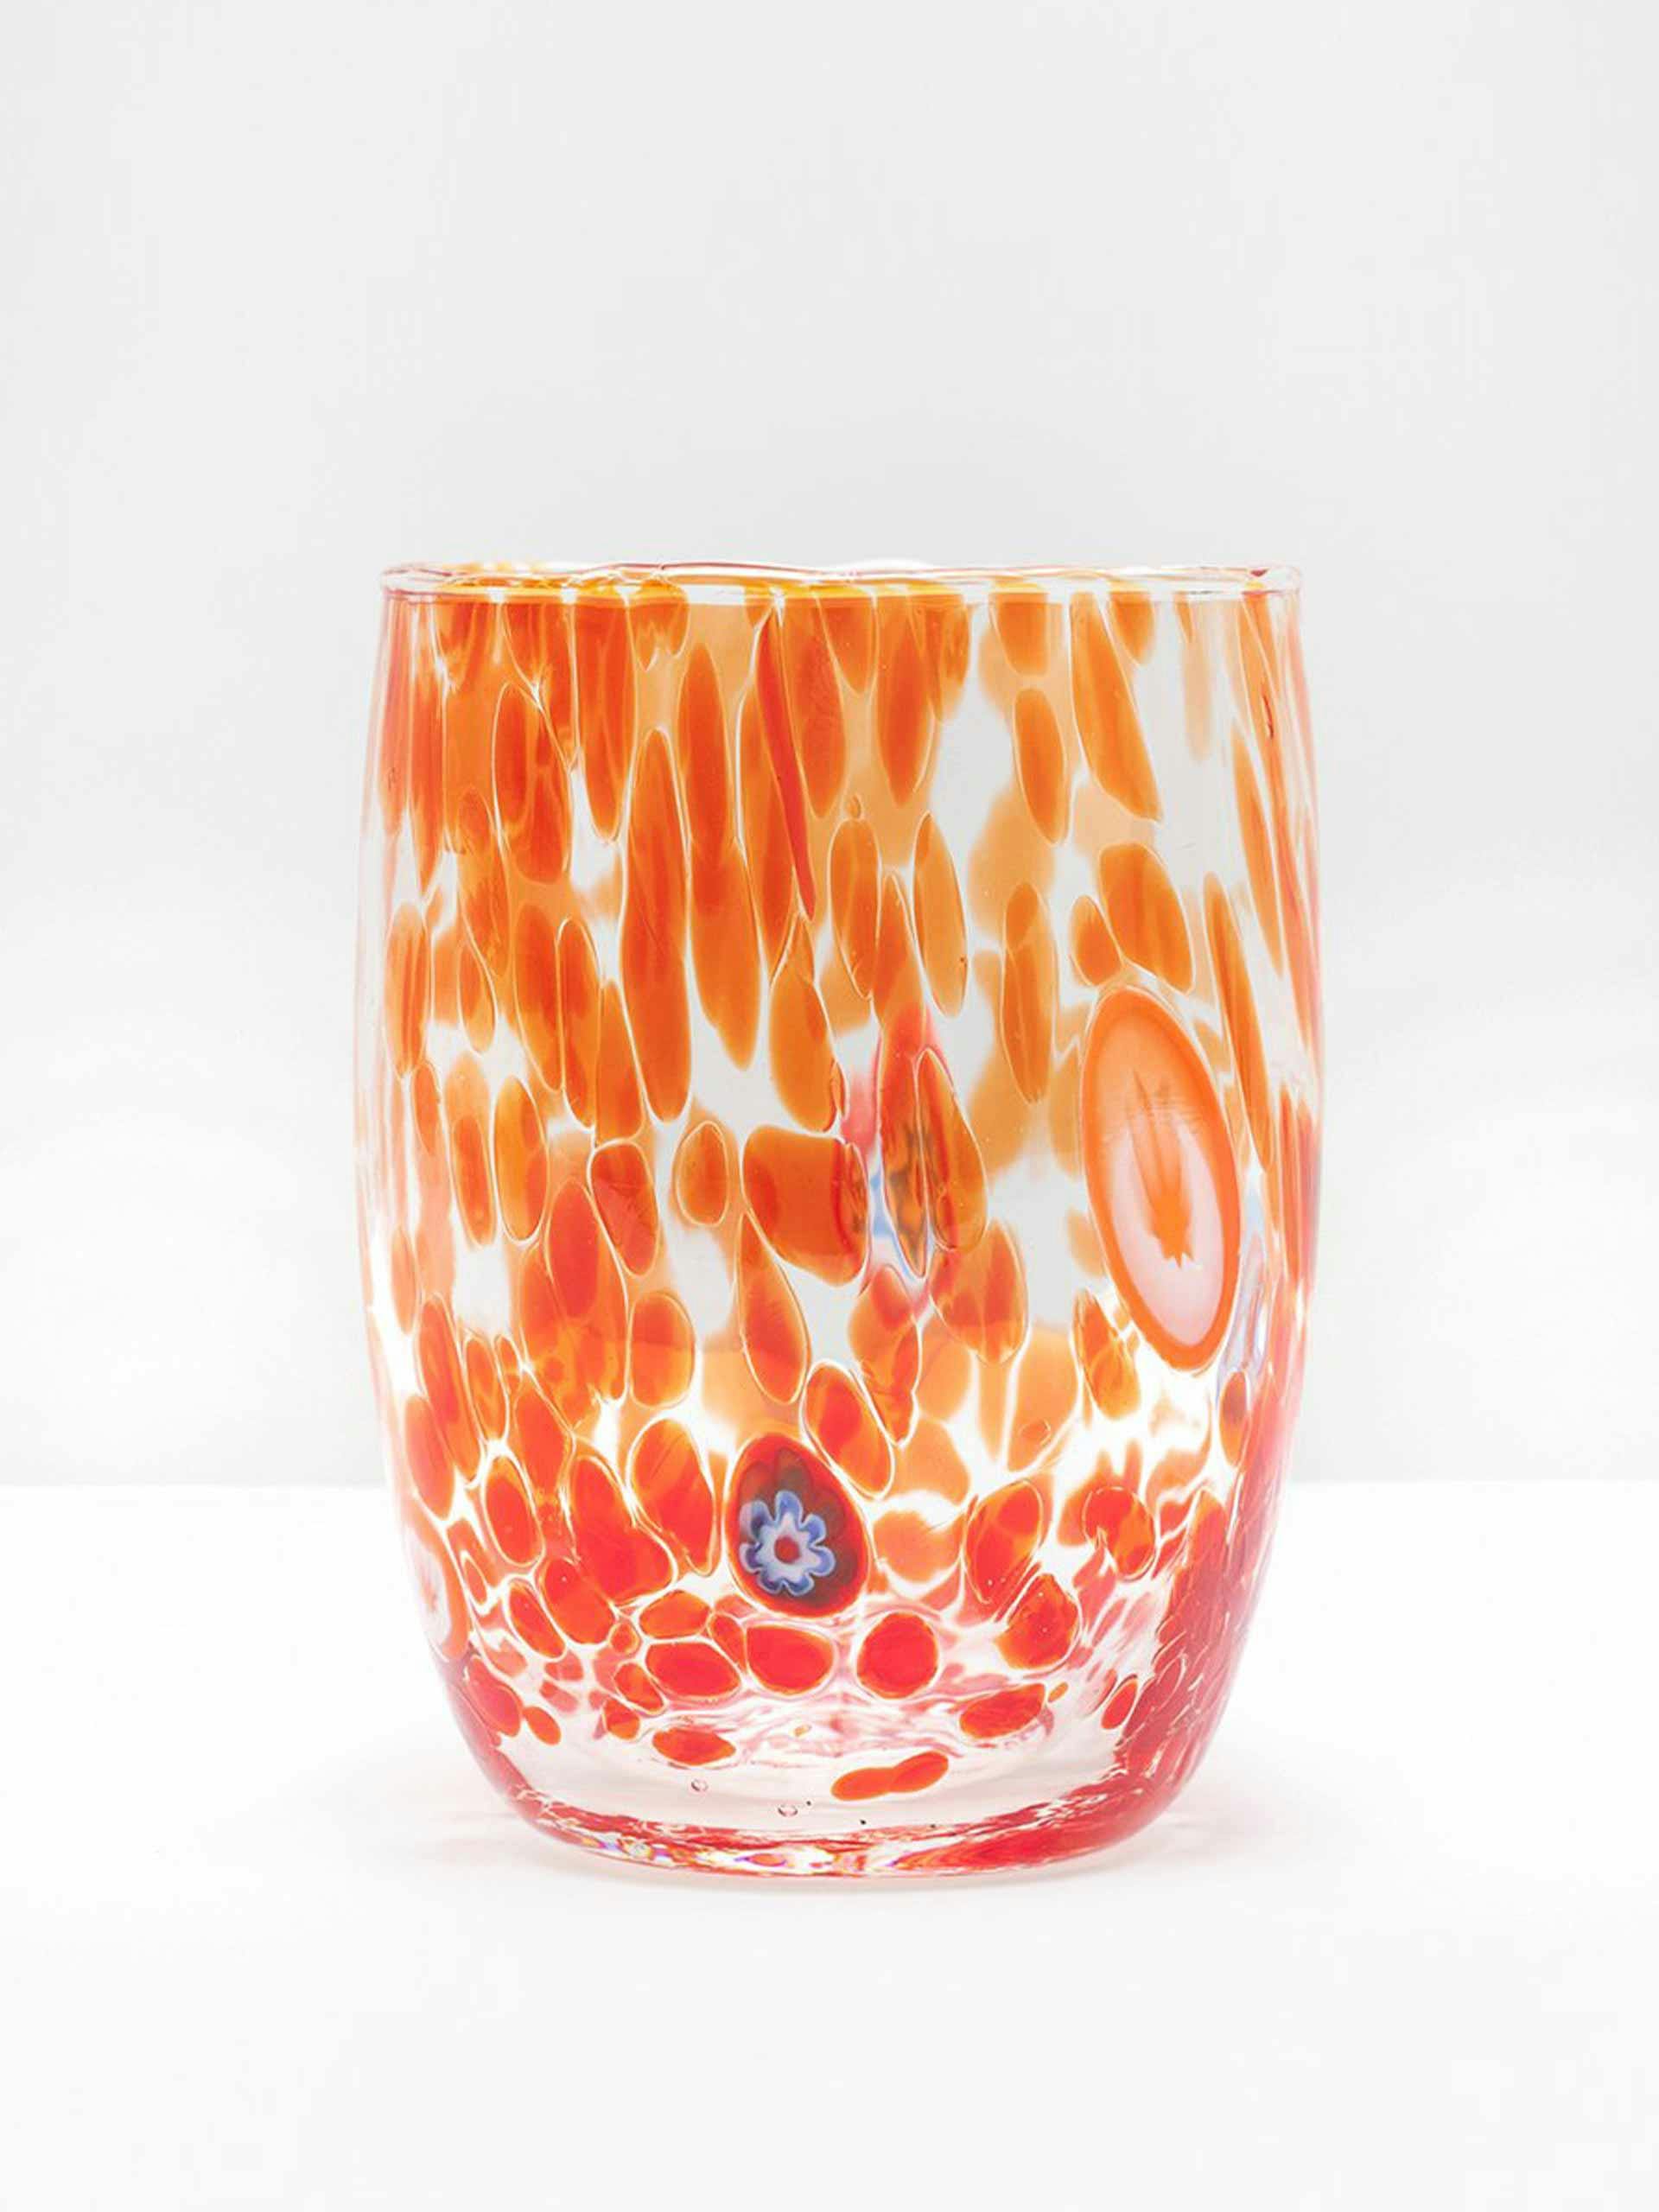 Orange murano glass tumbler